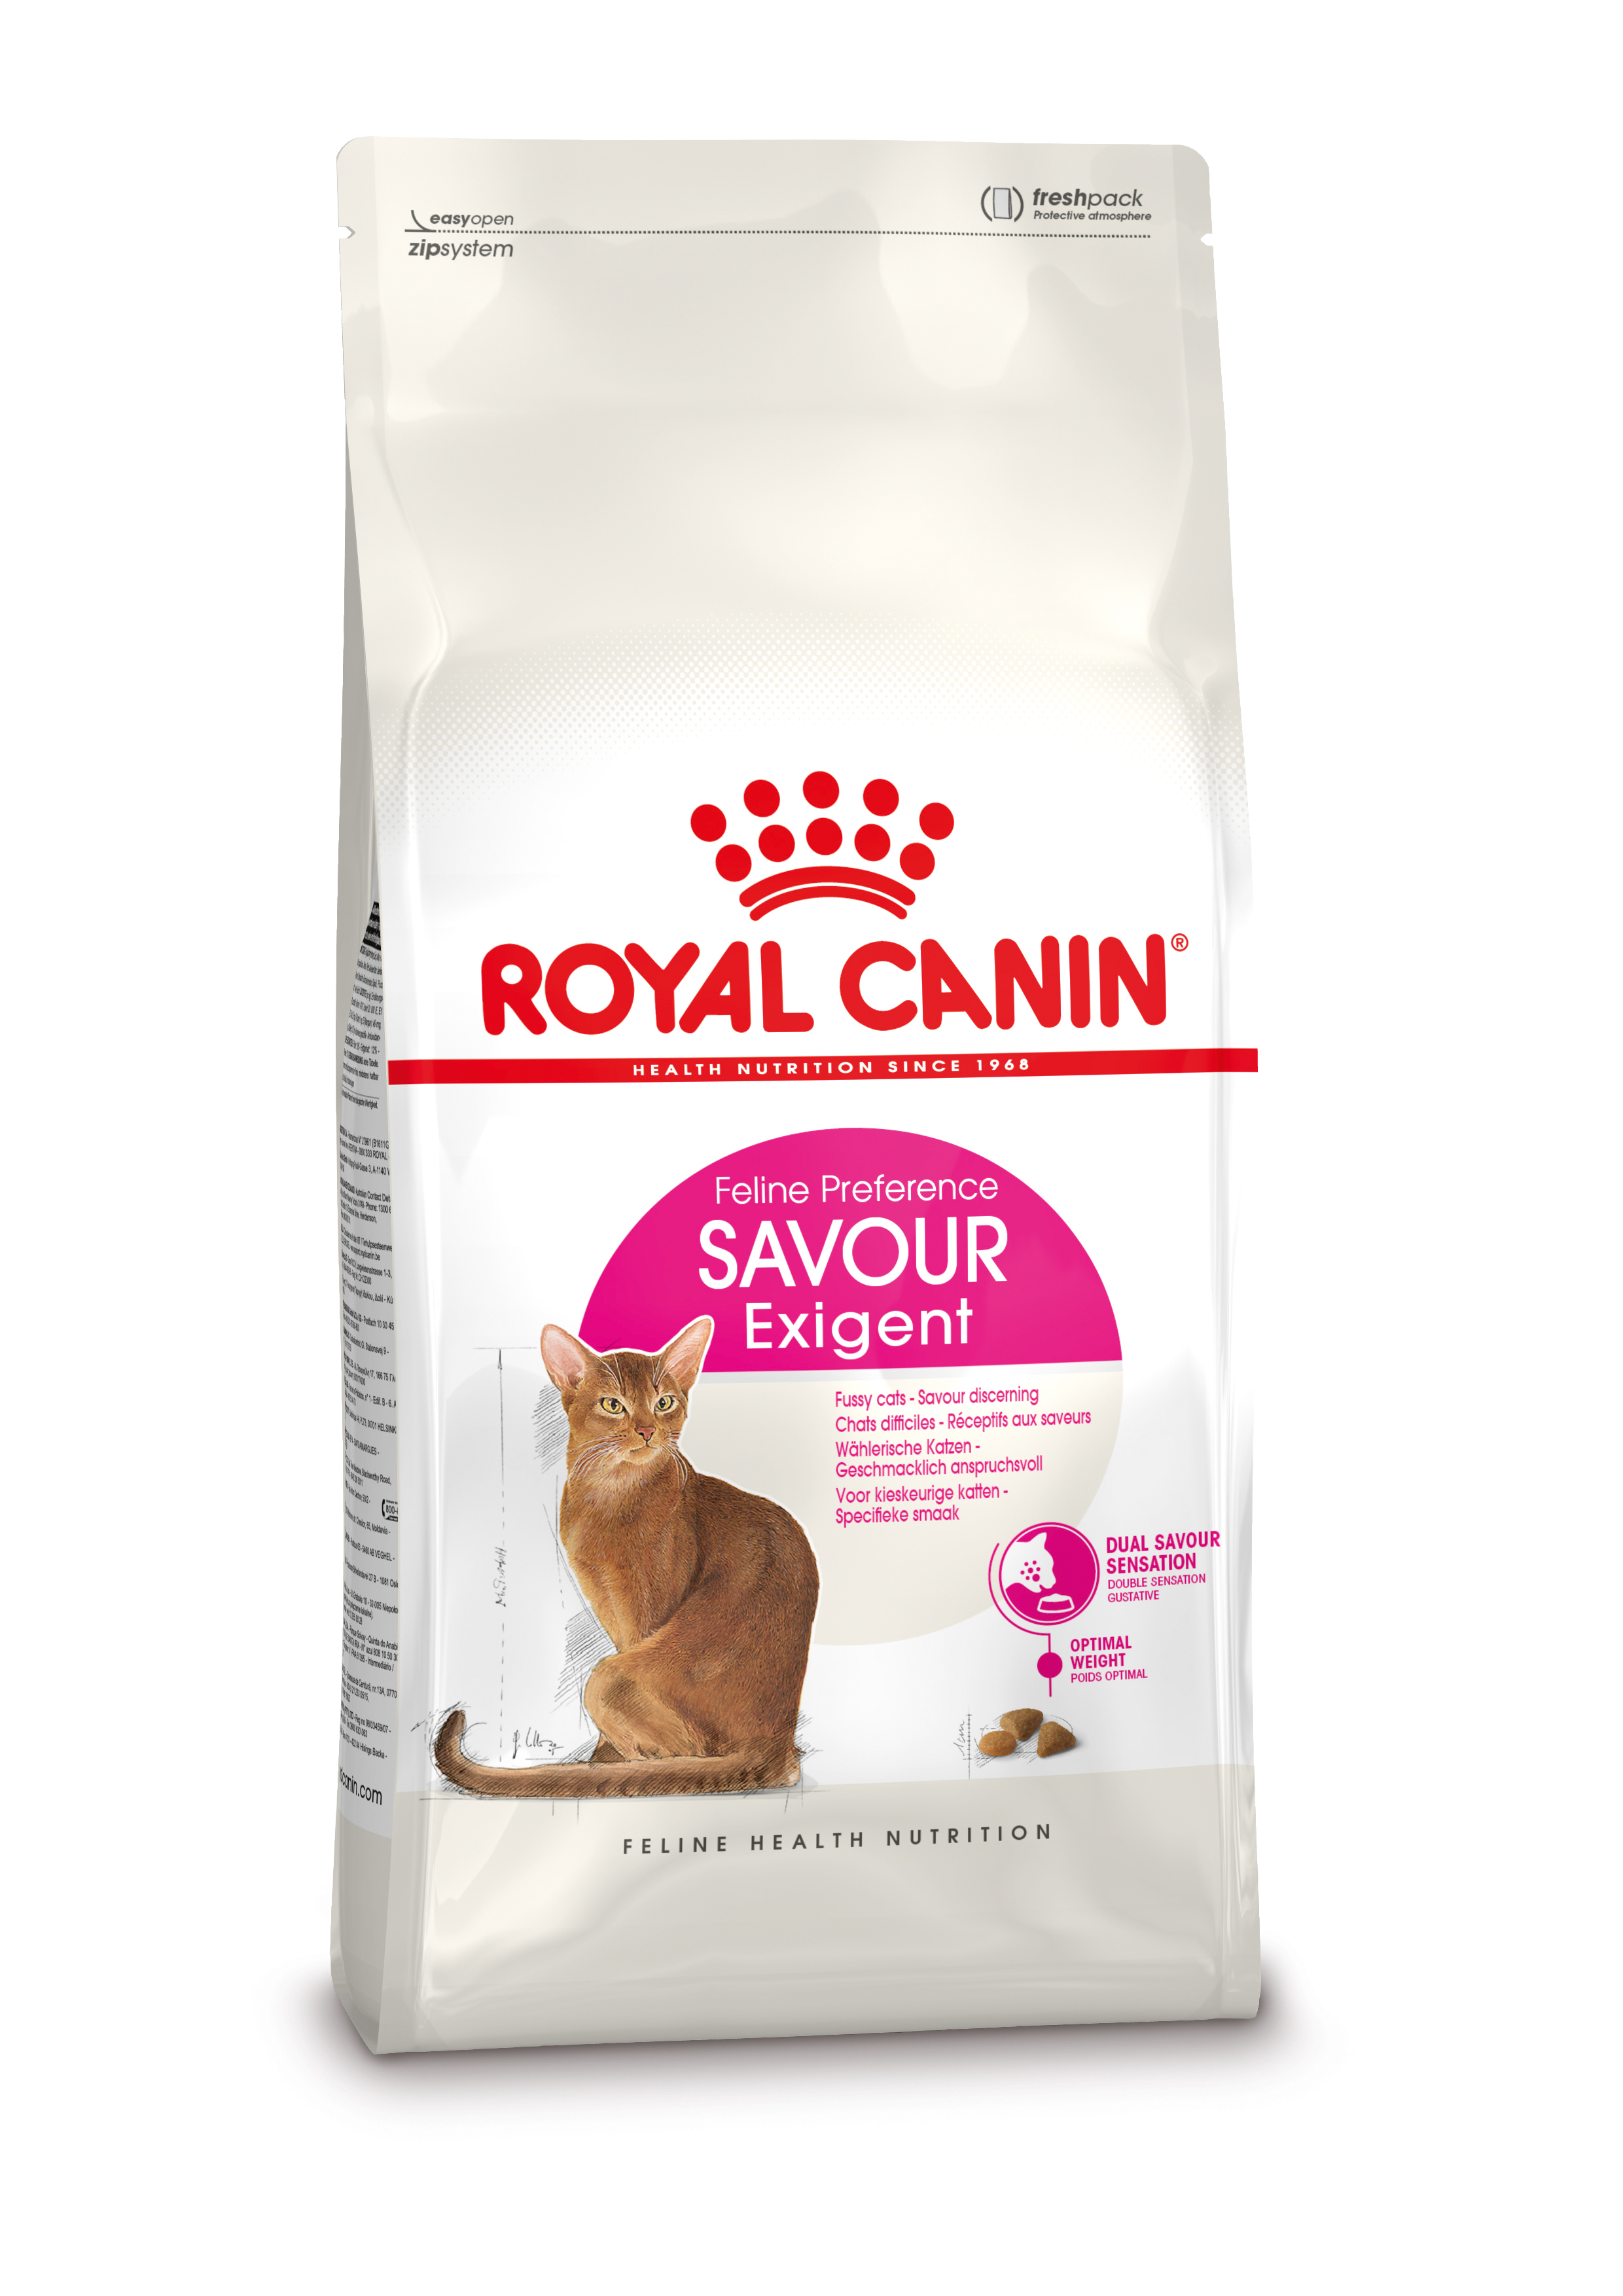 Afbeelding Royal Canin Exigent Savour Sensation 10 Kg door Brekz.nl